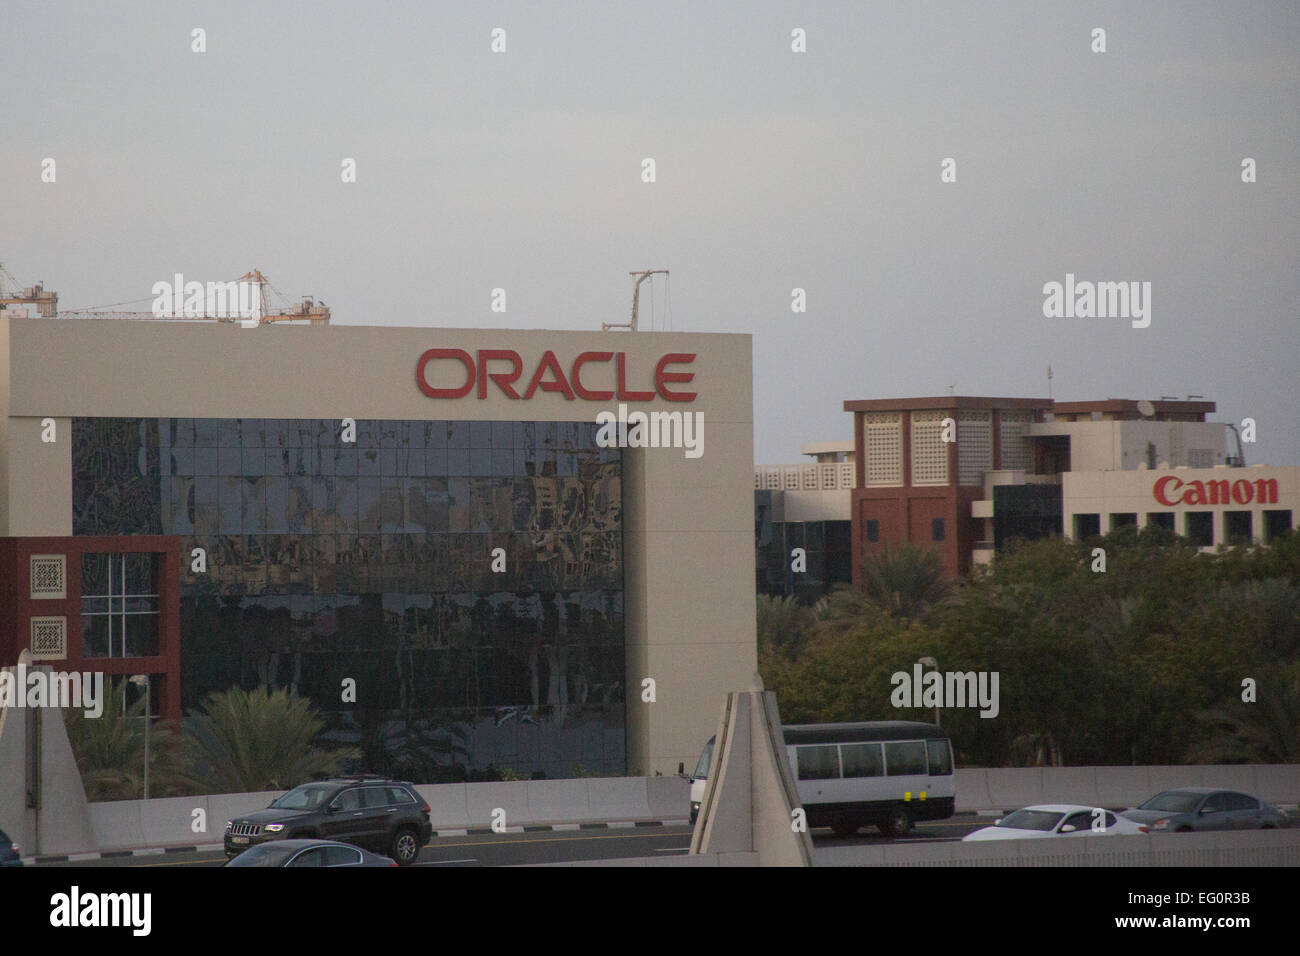 Oracle Office at Dubai Internet City, Dubai, UAE Stock Photo